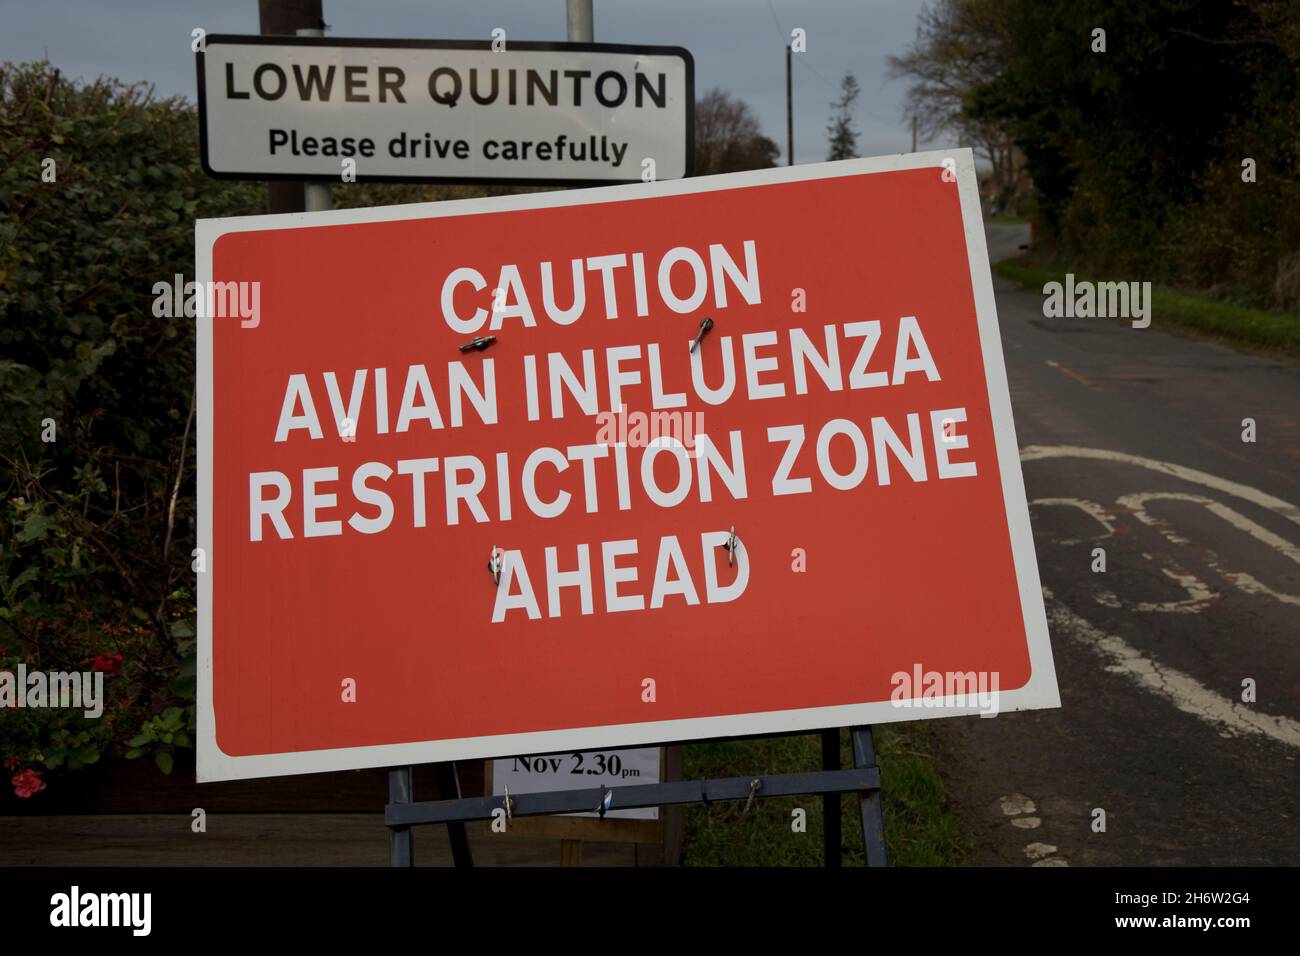 Grandi avvisi di zona di restrizione dell'influenza aviaria rossa sull'approccio alla Lower Quniton Warwickshire UK Foto Stock